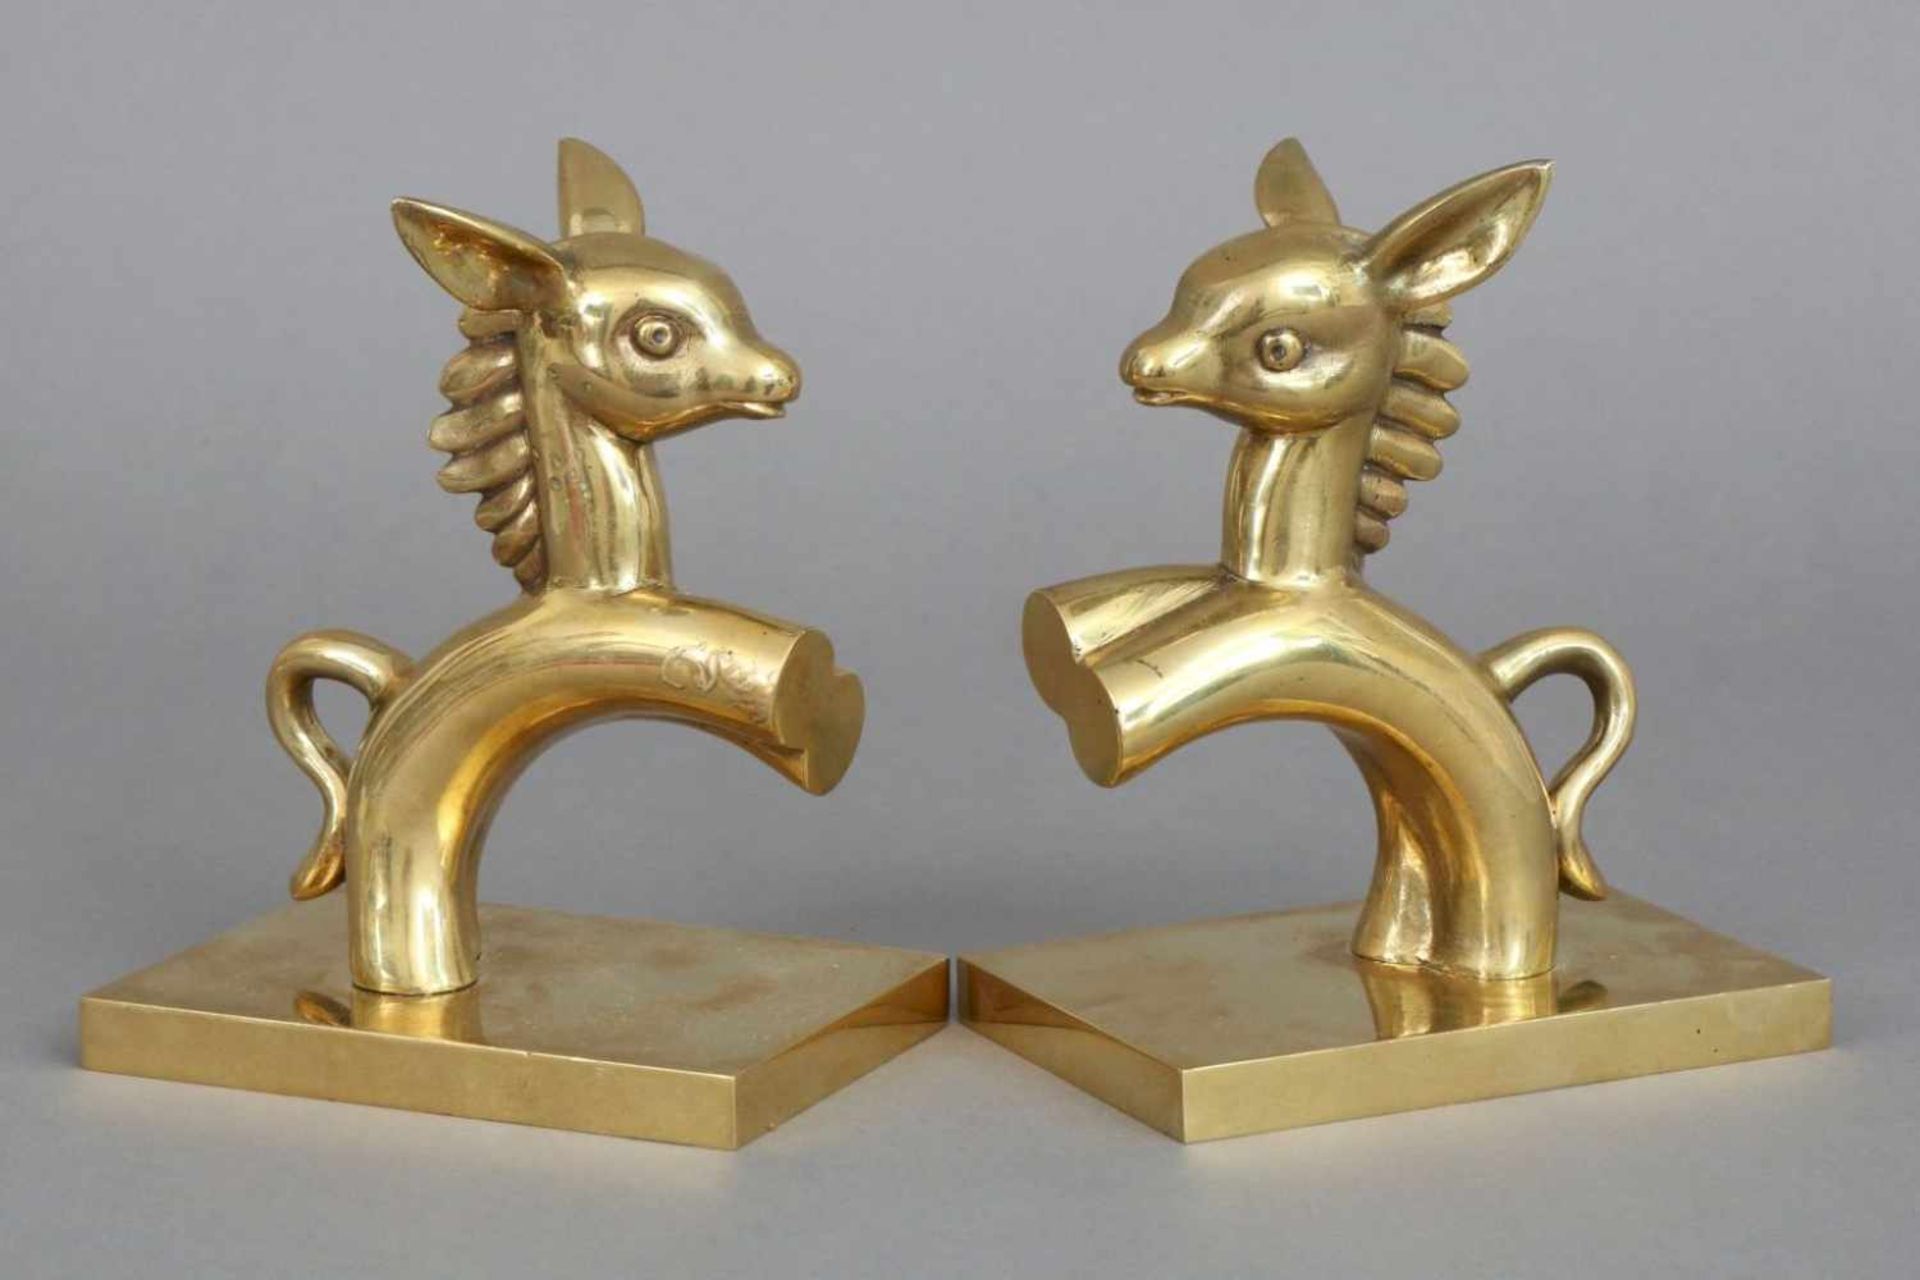 Paar Buchstützen im Stile Walter Bosse¨Esel¨, Bronze, poliert, auf eckiger Plinthe montiert,